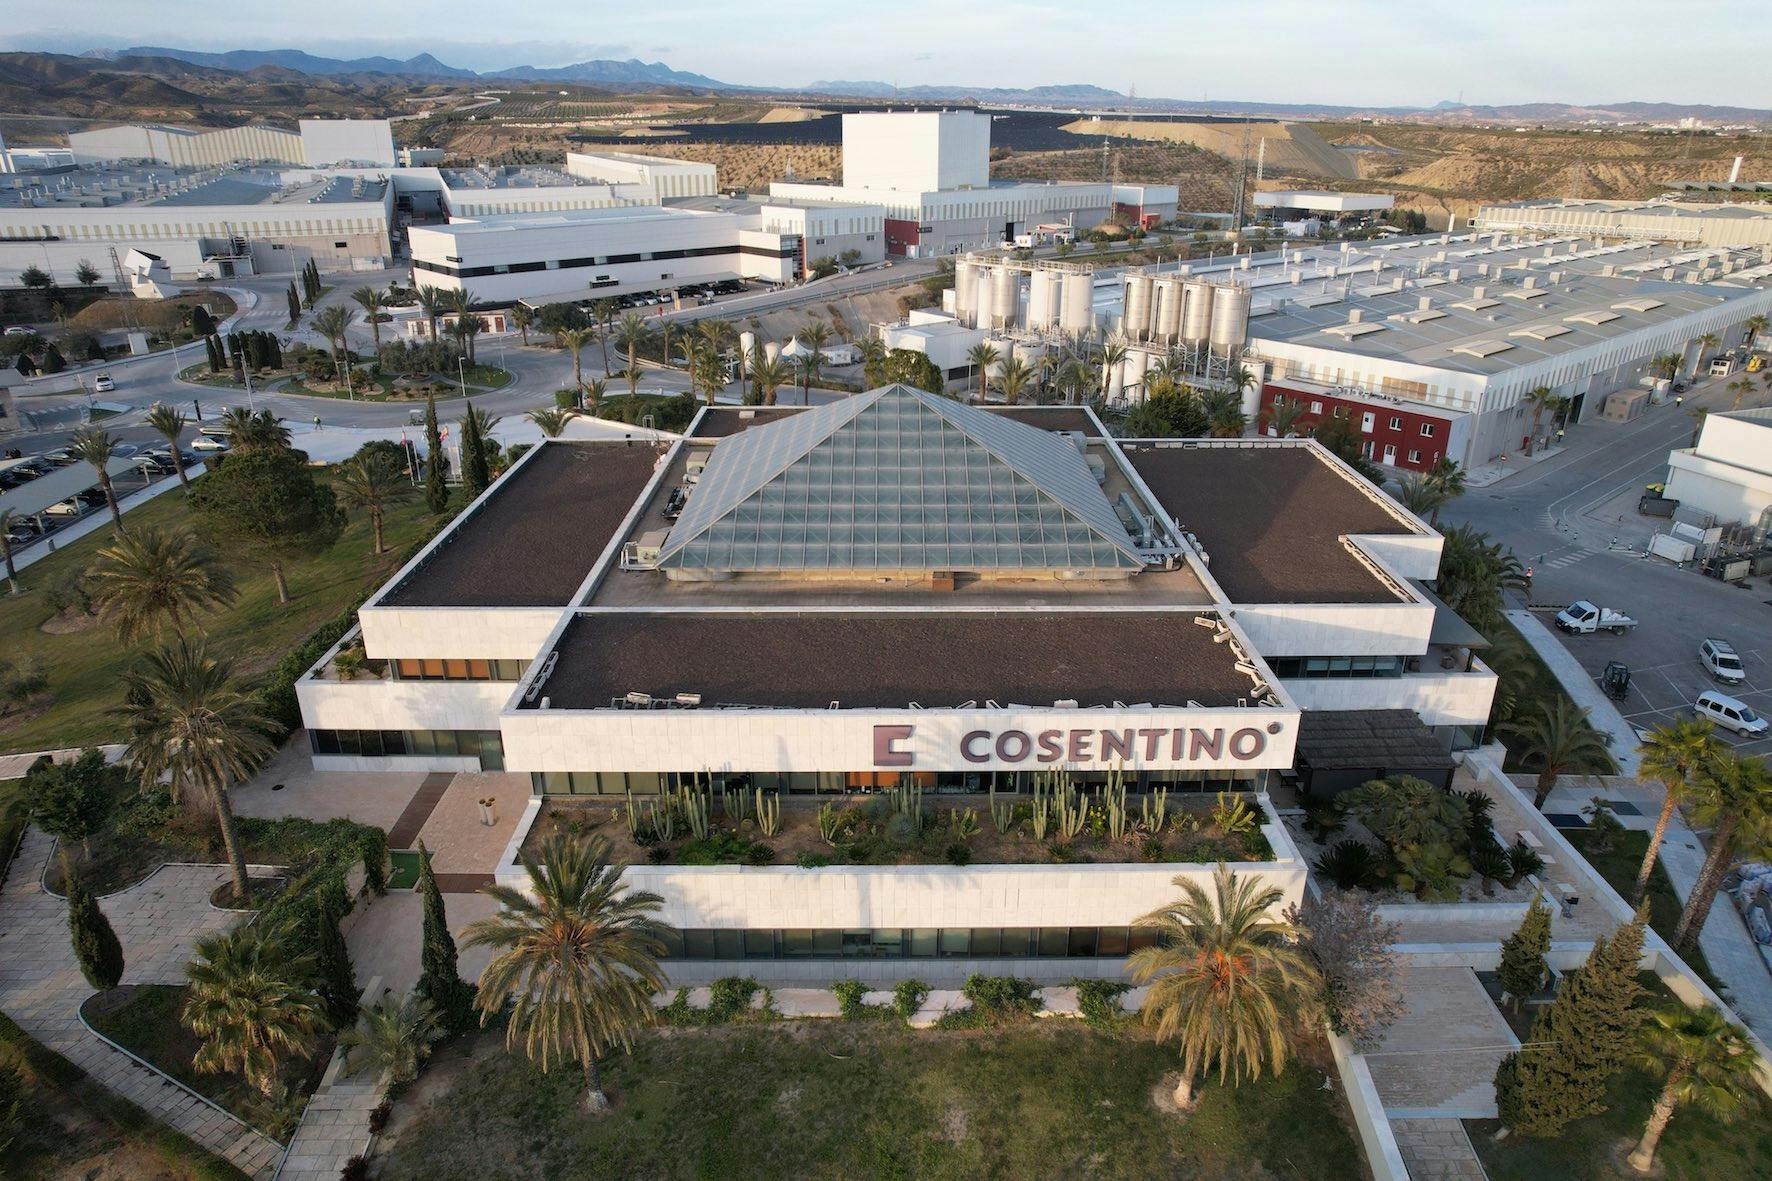 Image 97 of Parque Industrial Cosentino vista aerea oficinas d.jpg?auto=format%2Ccompress&ixlib=php 3.3 in Inspiration - Cosentino